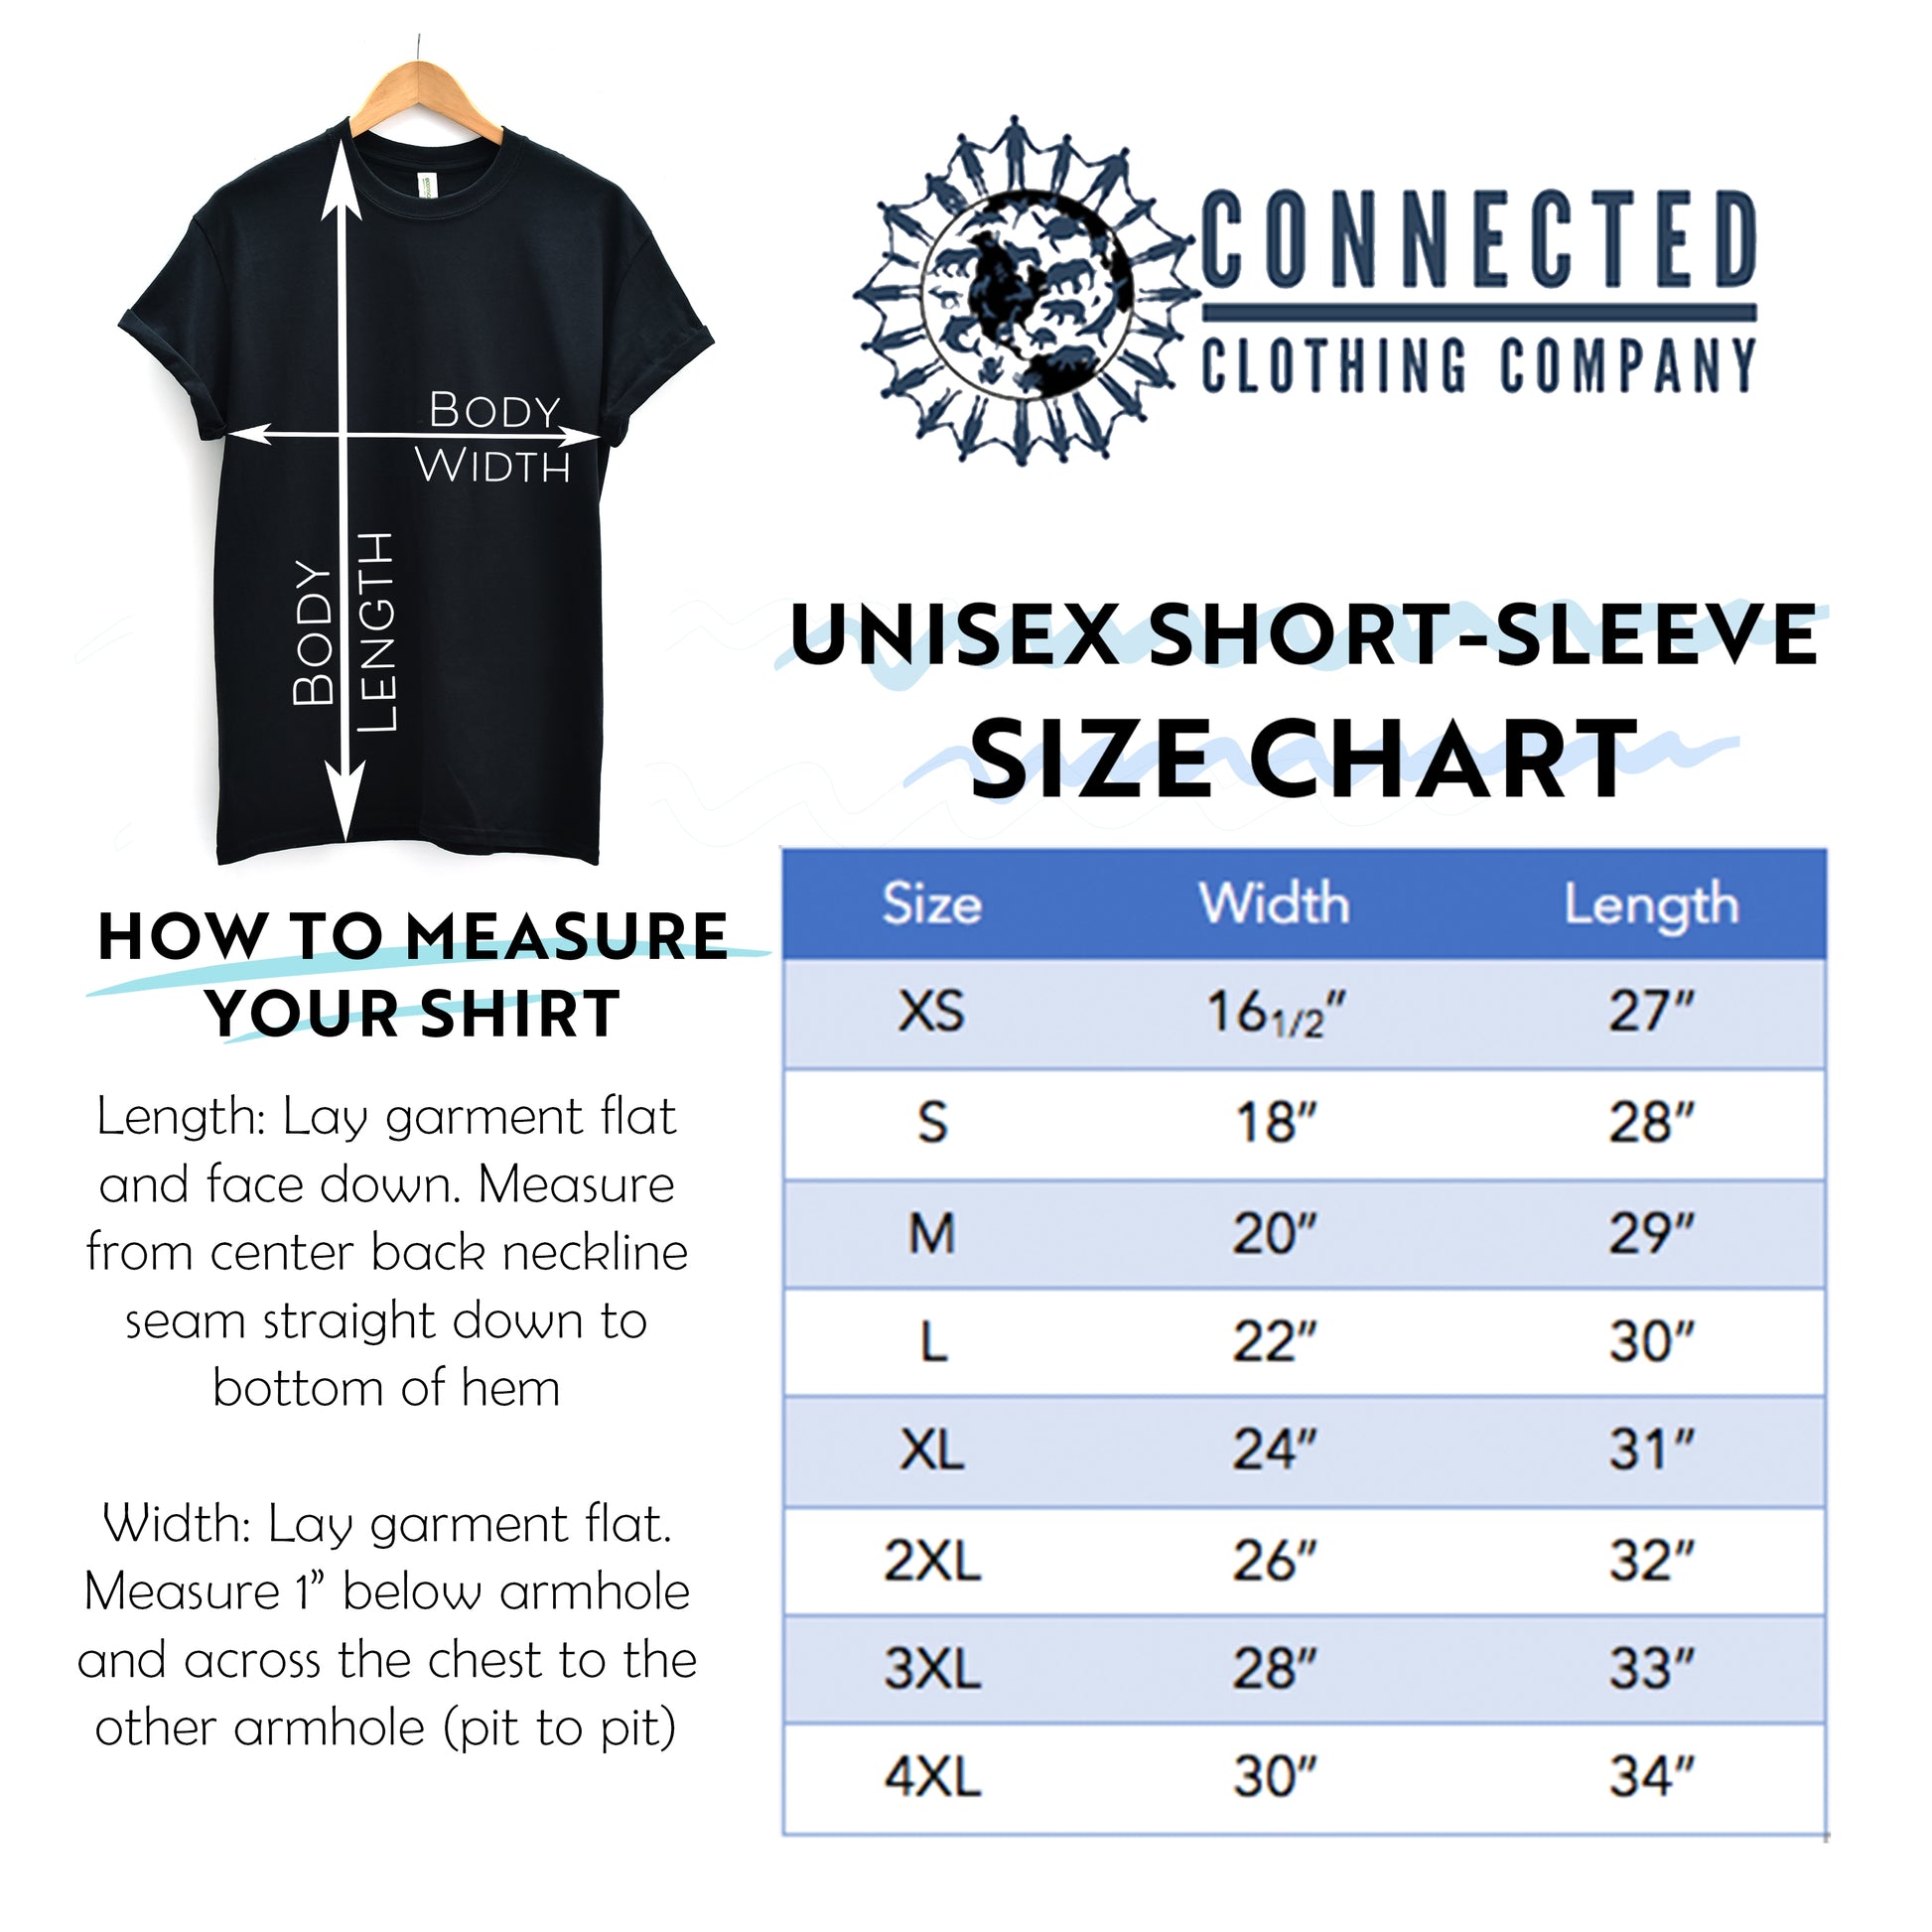 Unisex Short-Sleeve Size Chart